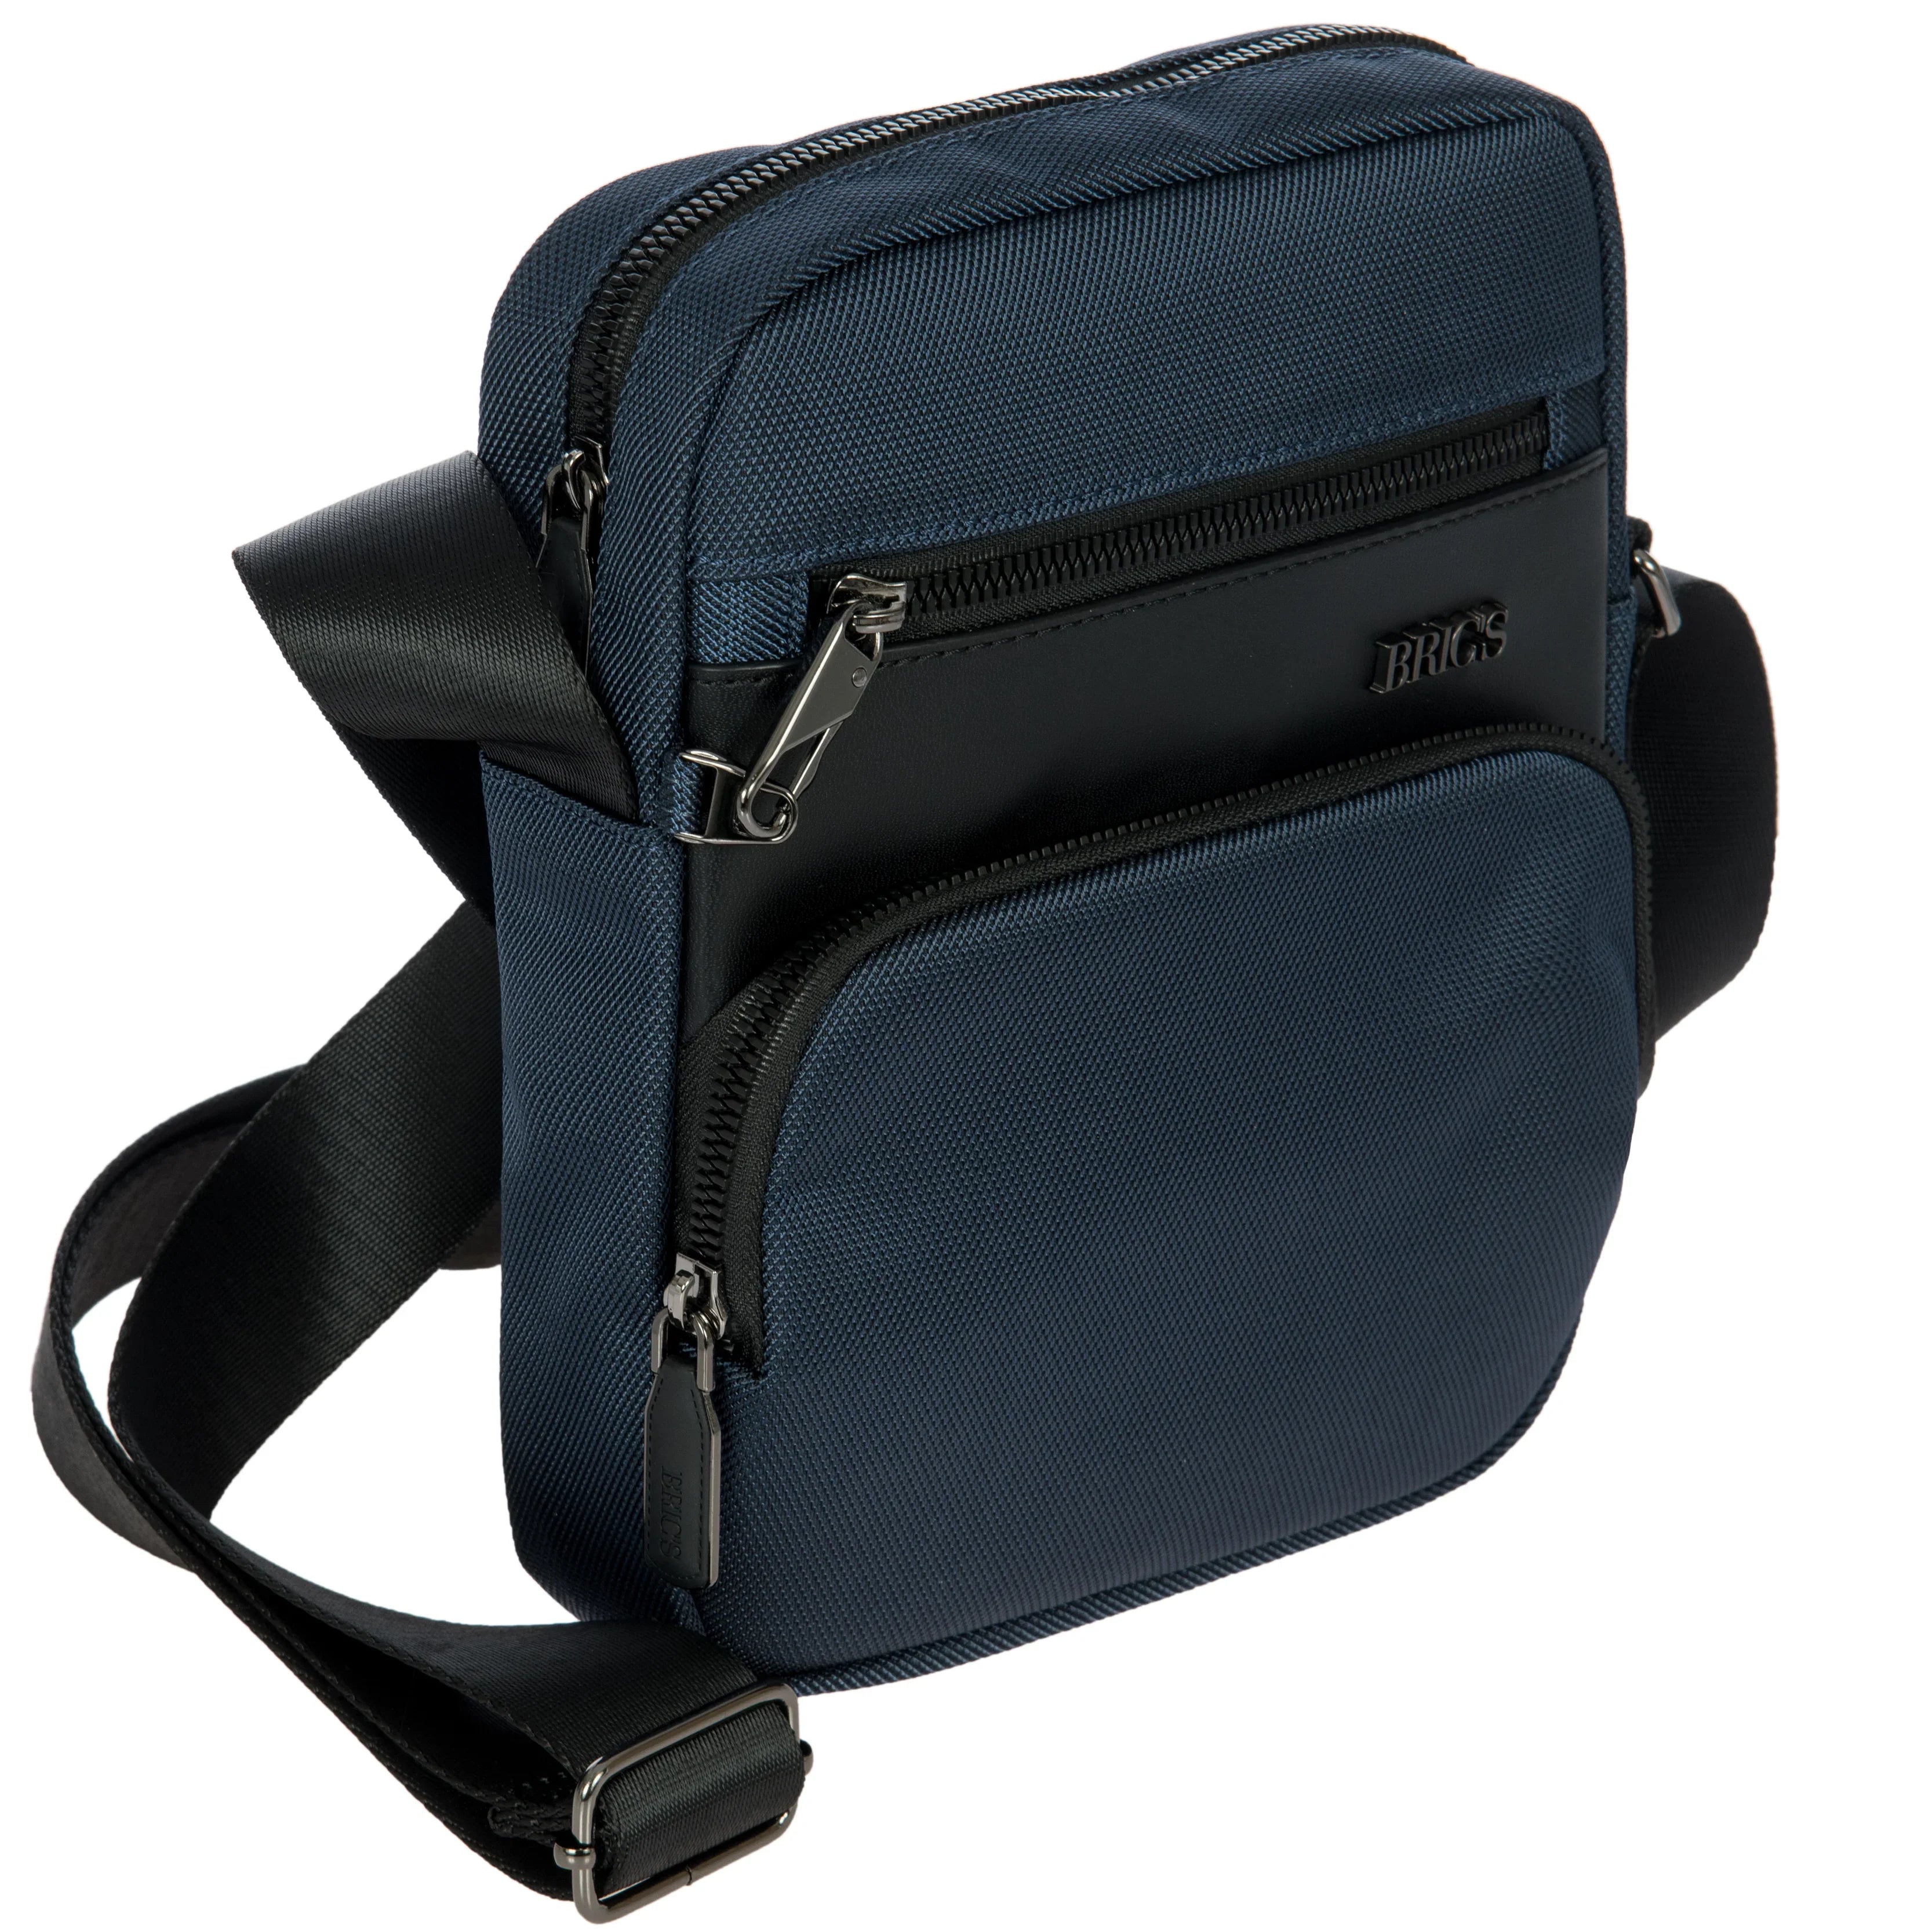 Brics Matera shoulder bag S 24 cm - Black